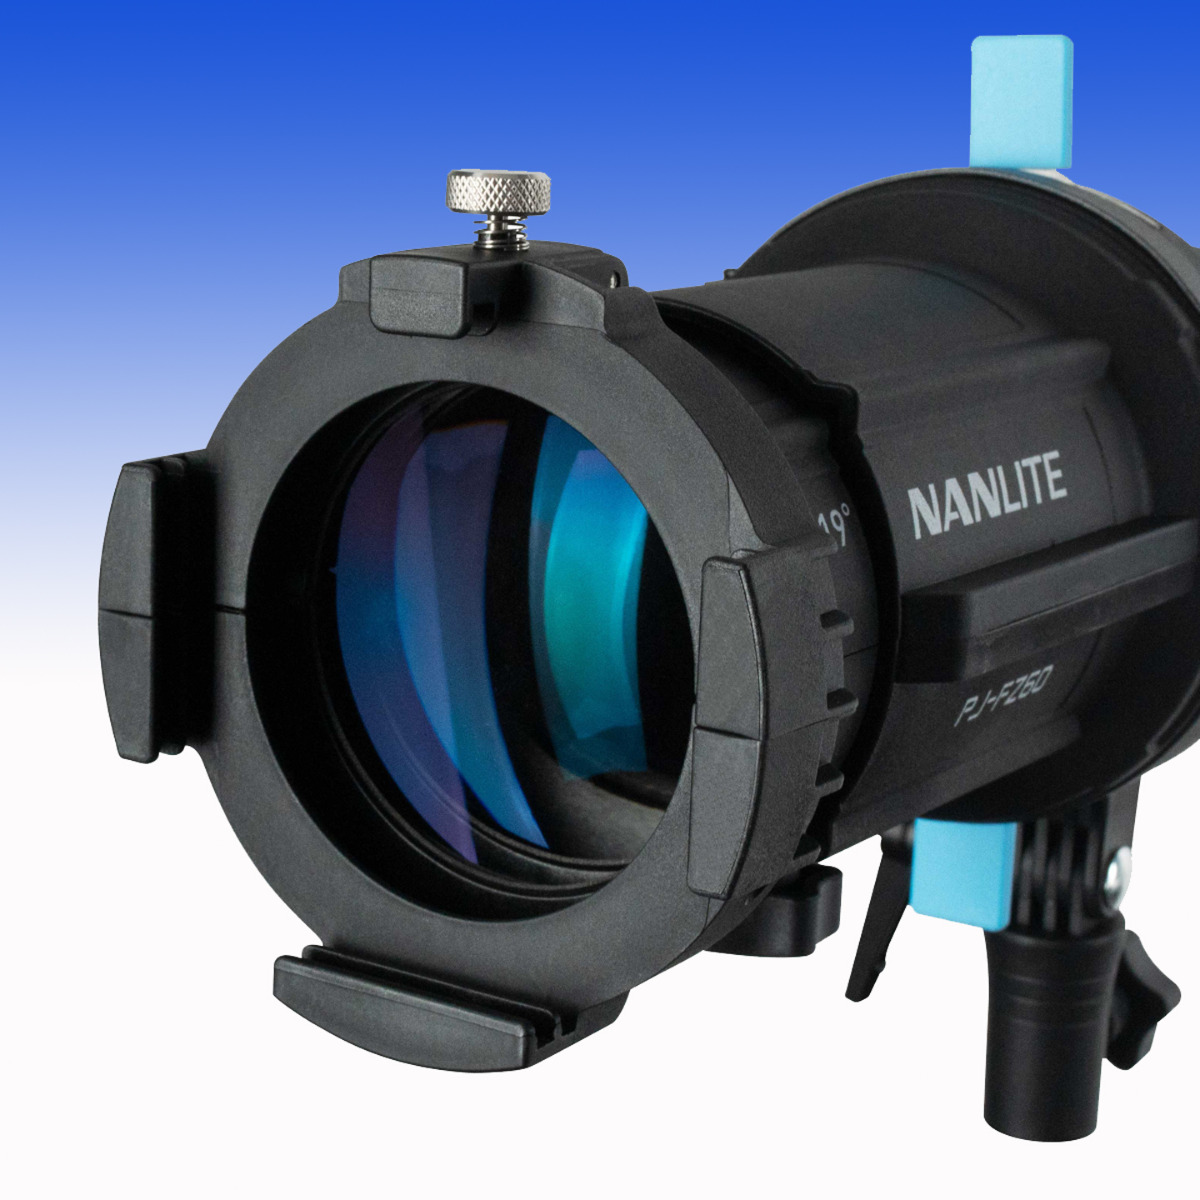 19° Linse für den Nanlite Projektionsvorsatz NL-PJ-FZ60 (NL-PJ-FZ60-L19) 